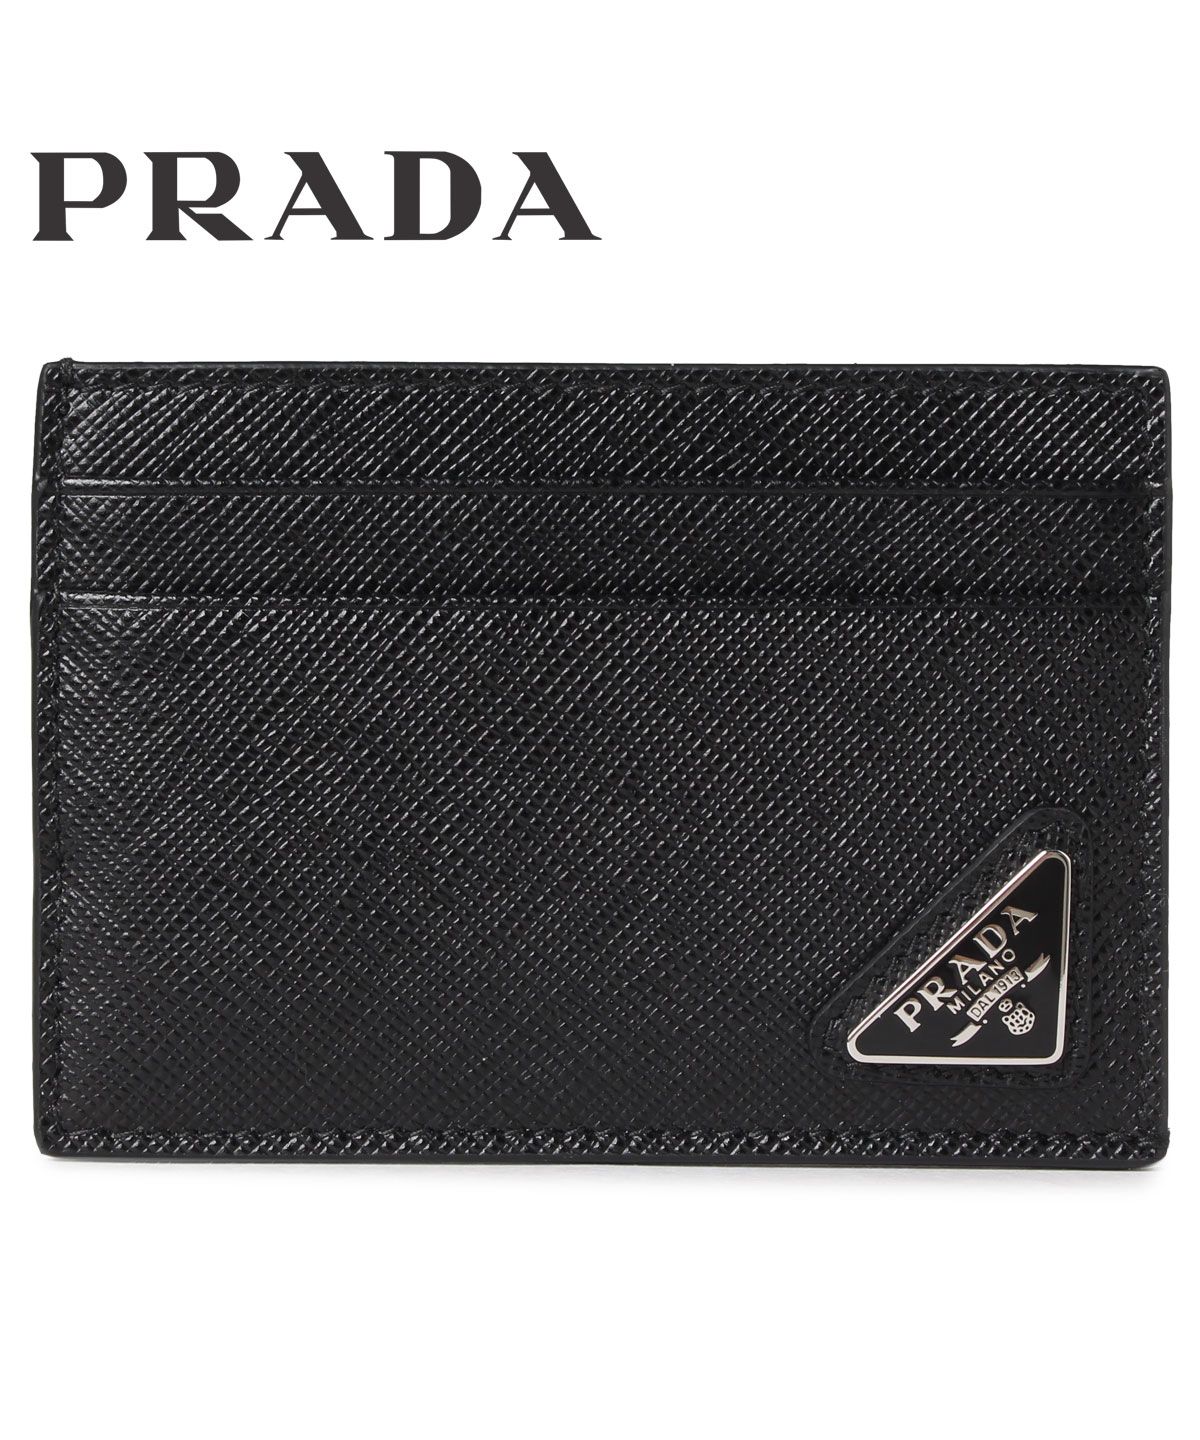 プラダ PRADA パスケース カードケース ID 定期入れ メンズ